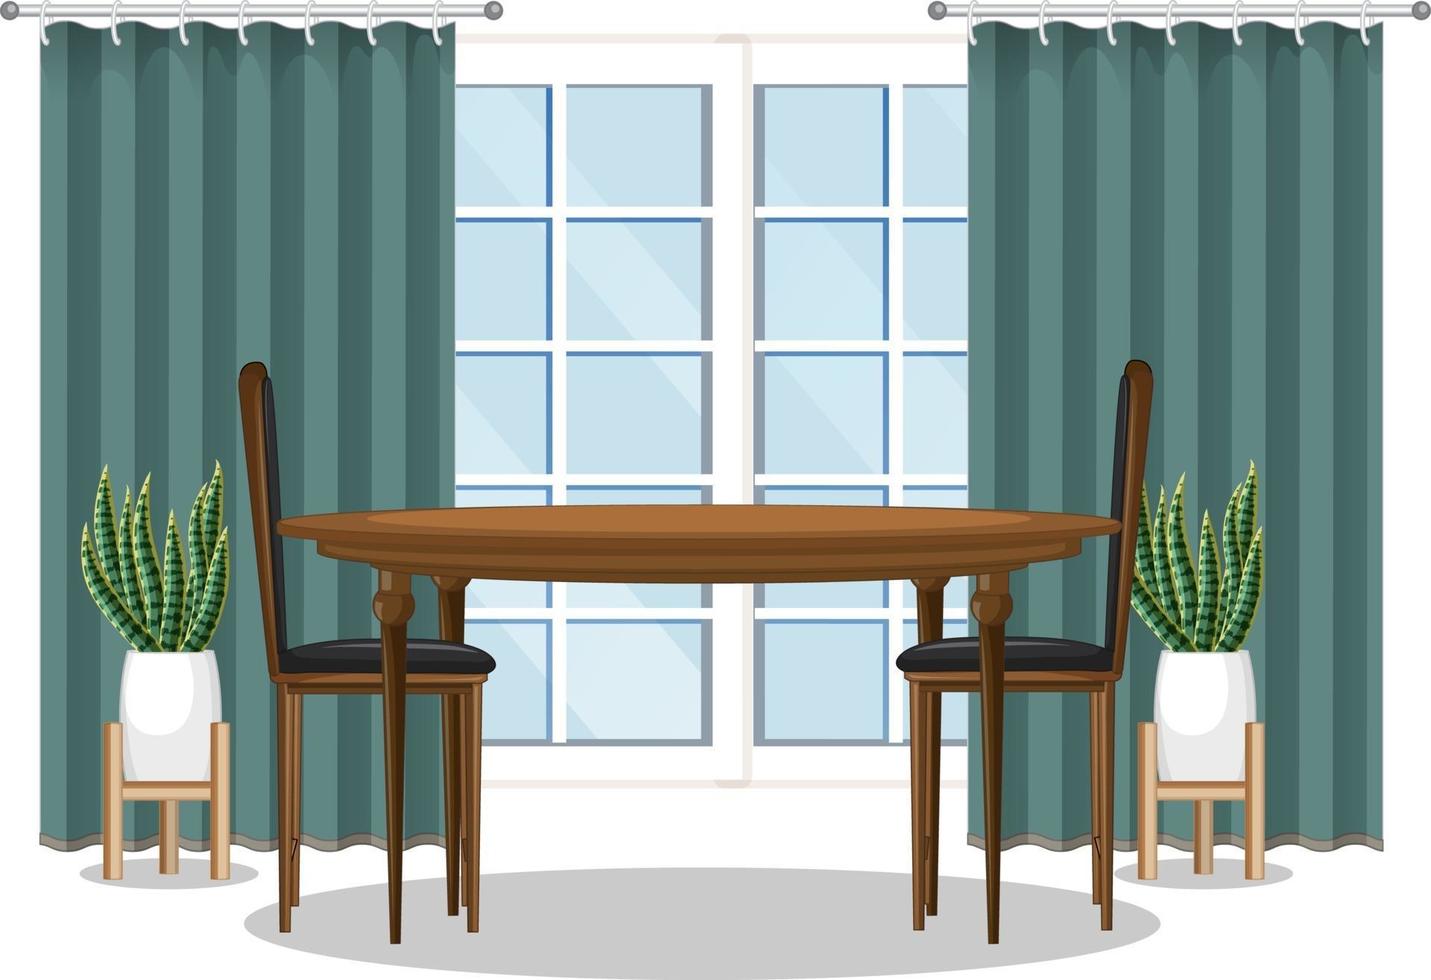 Esstisch mit Fenster und grünem Vorhang vektor